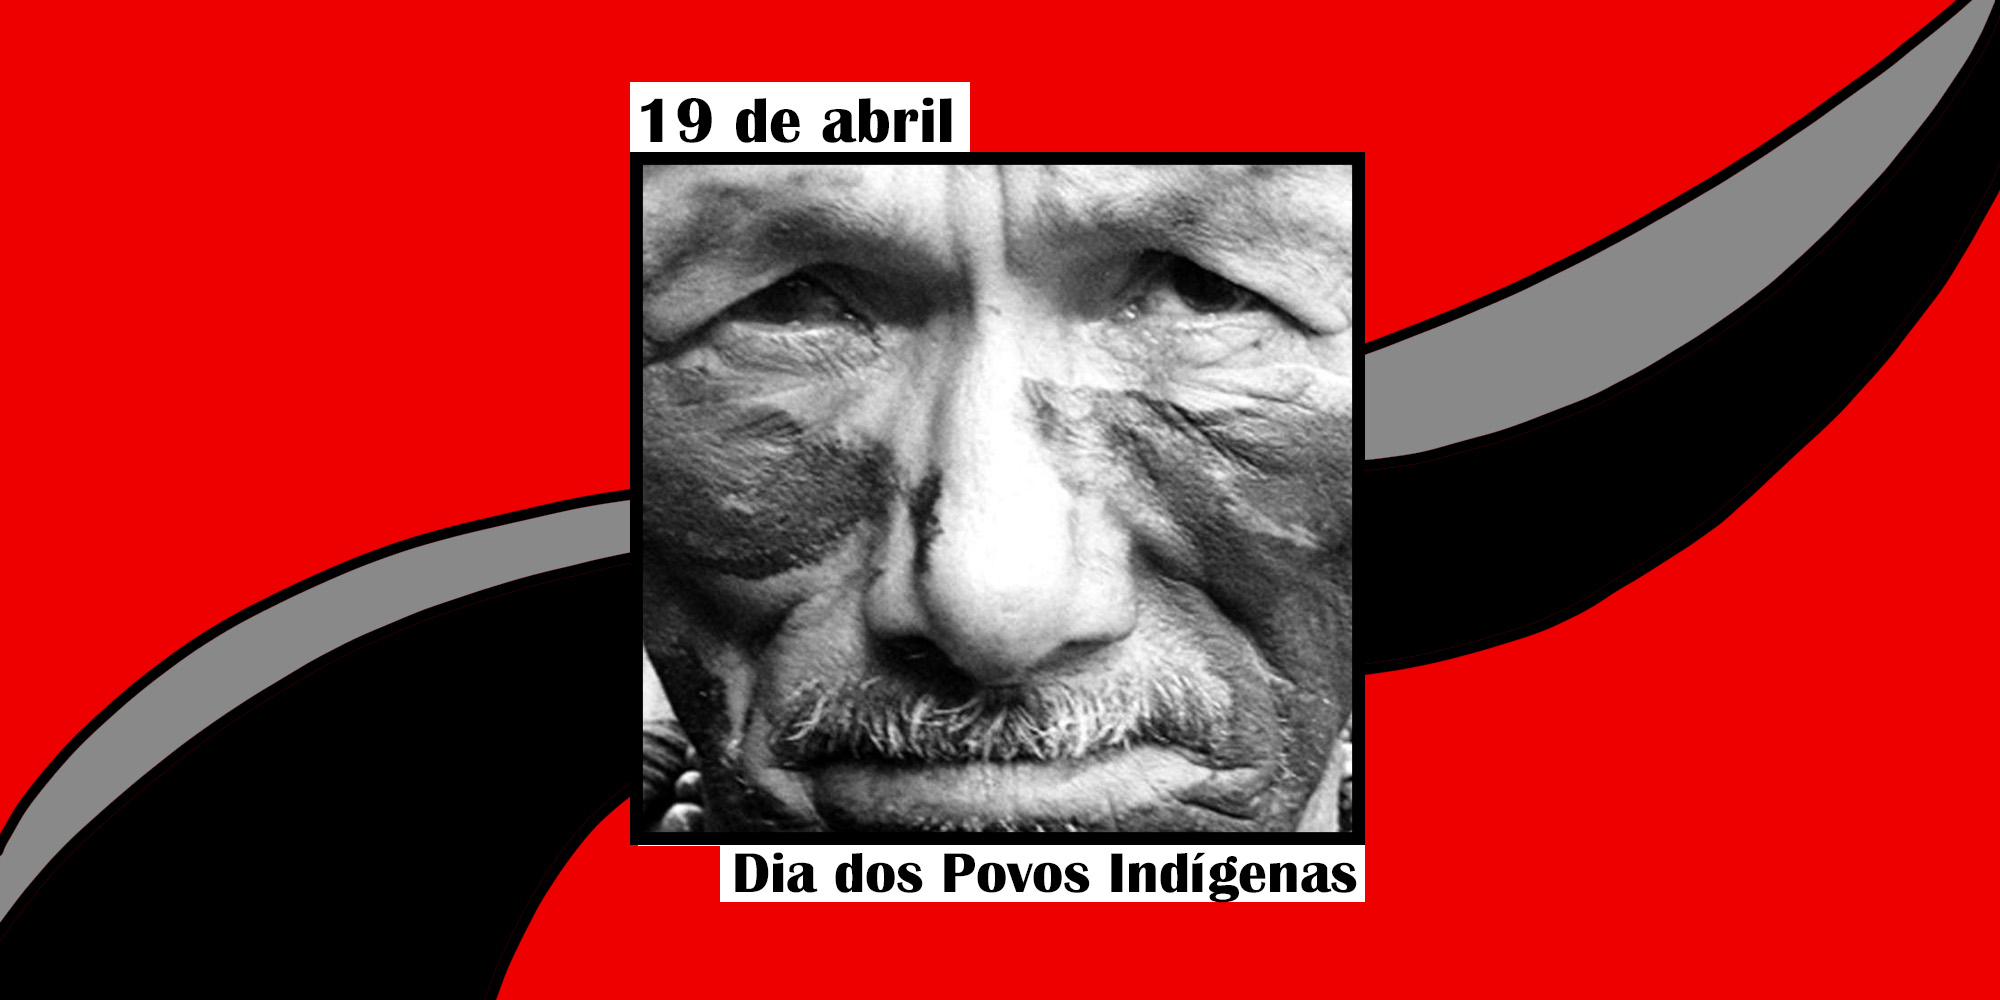 19 de abril, Dia dos Povos Indígenas: data de luta e reflexão